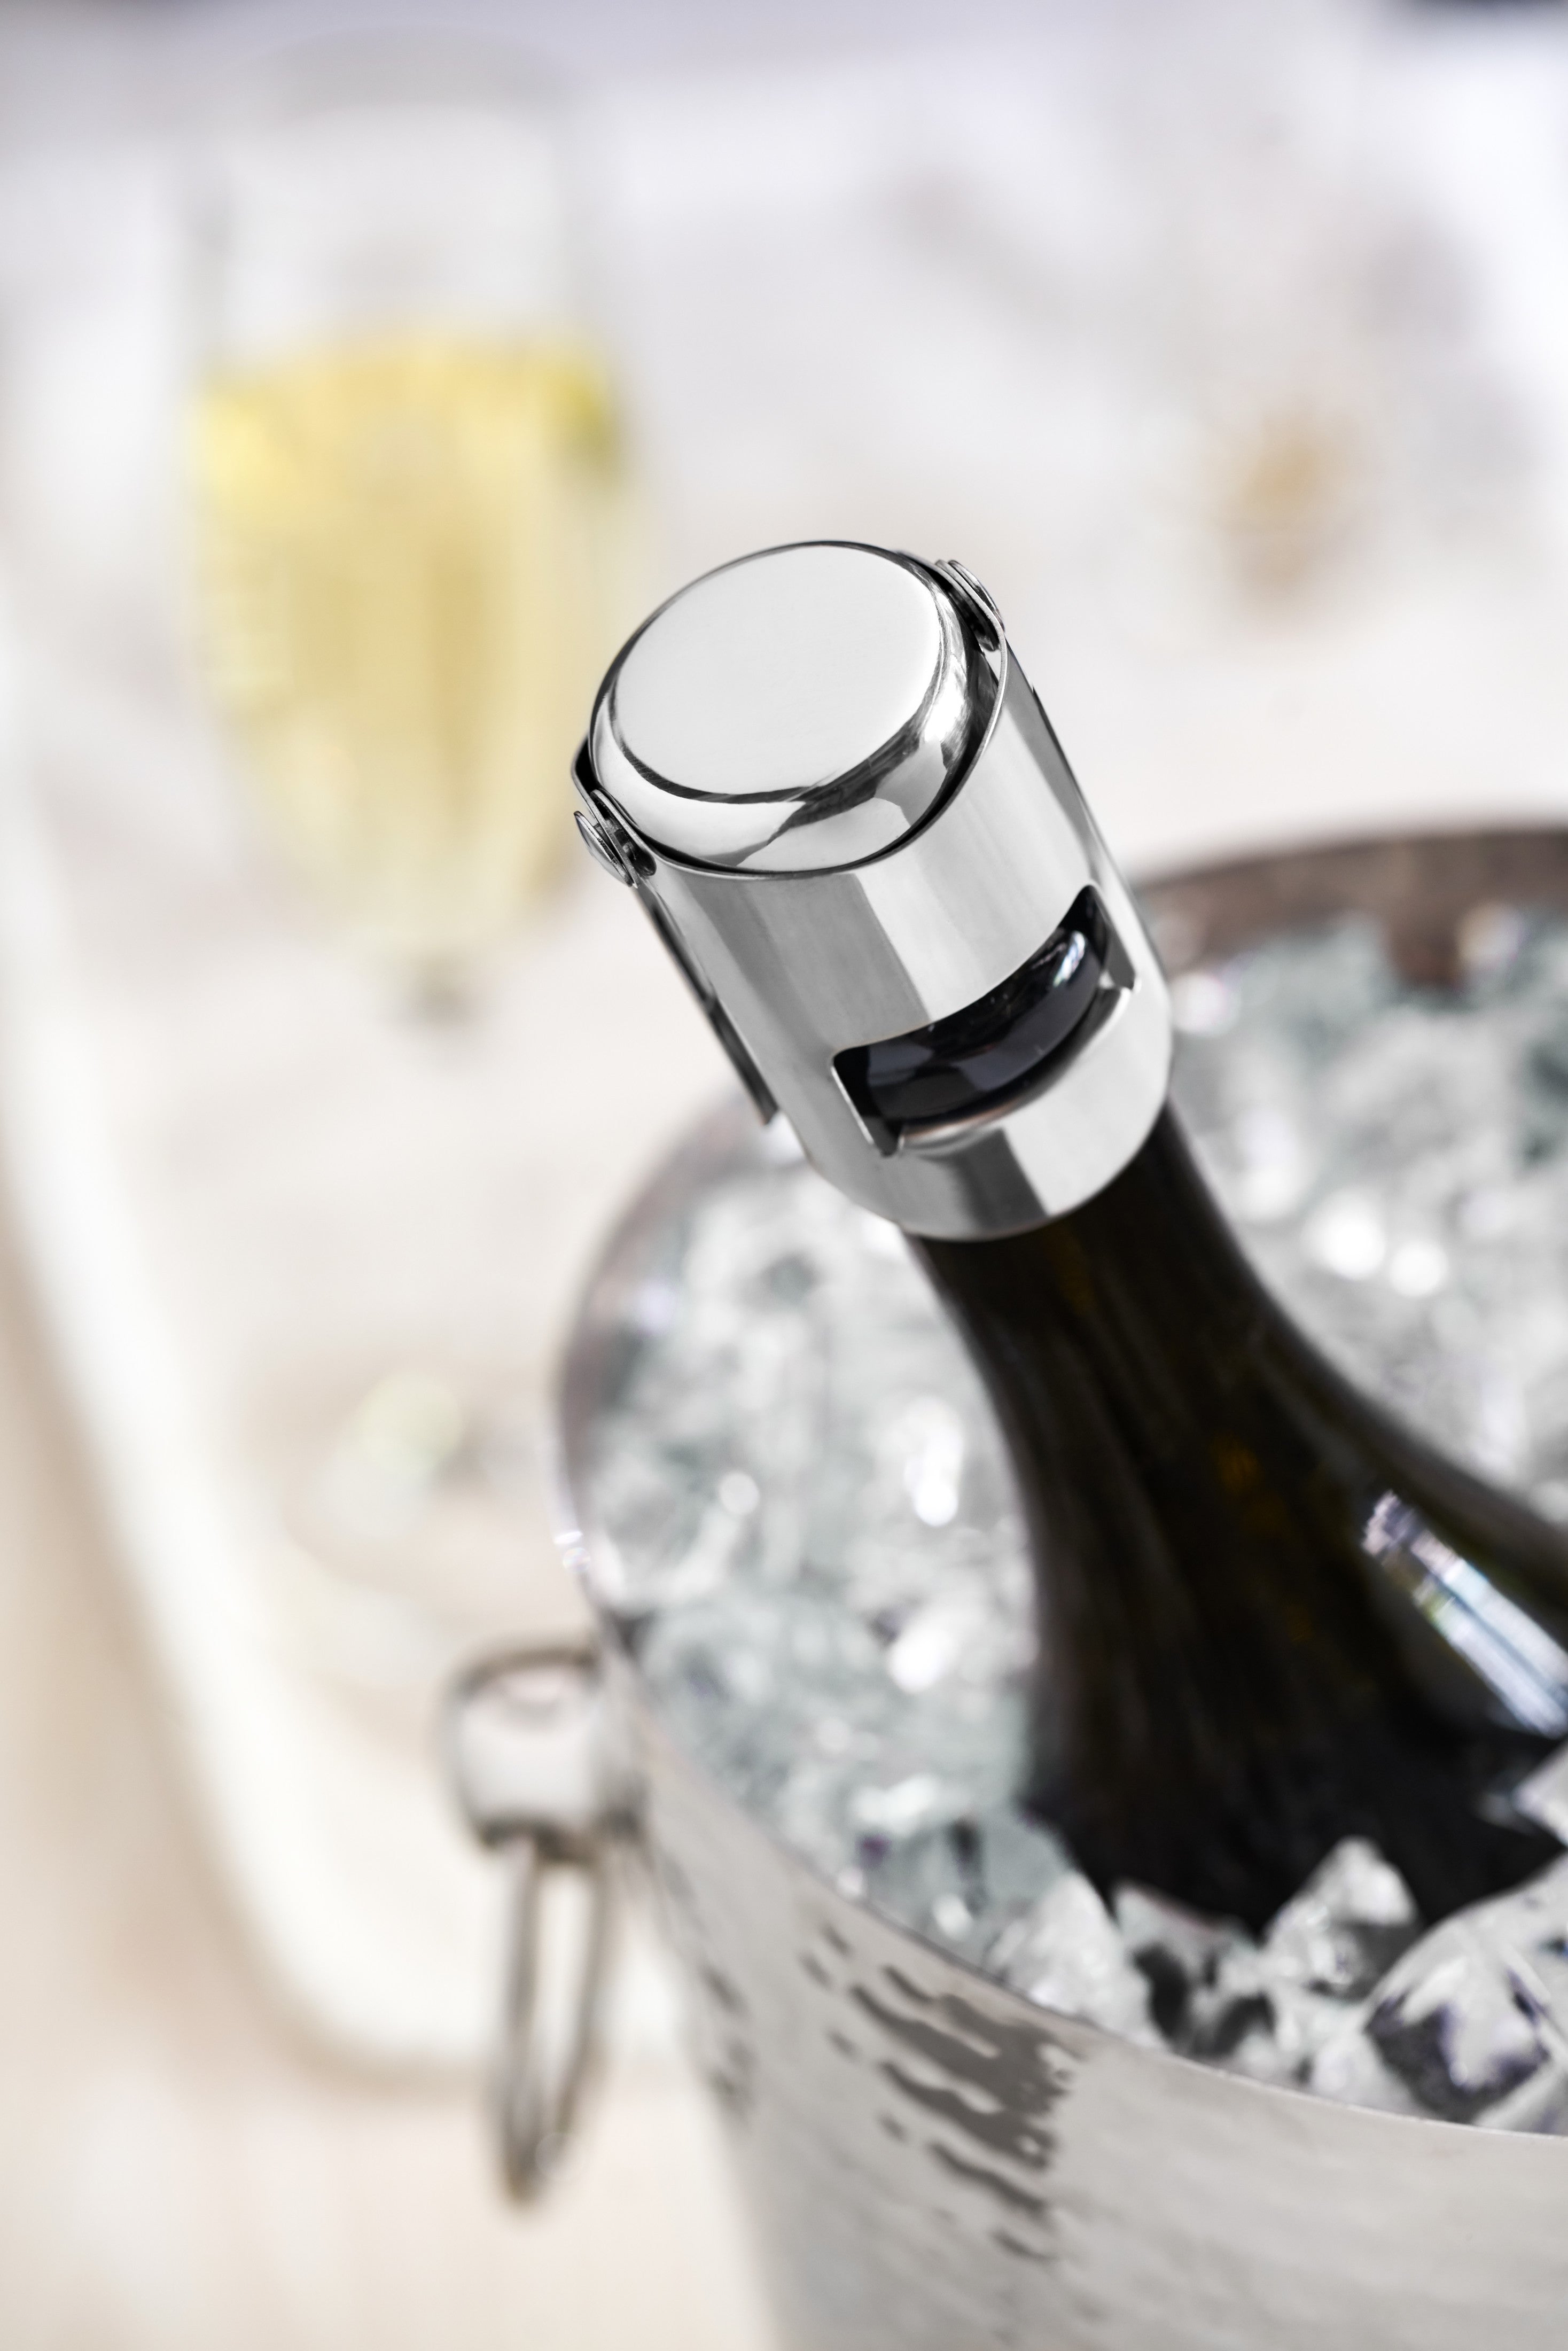 Creative Silicone Wine Stopper Champagne Cork Airtight Seal